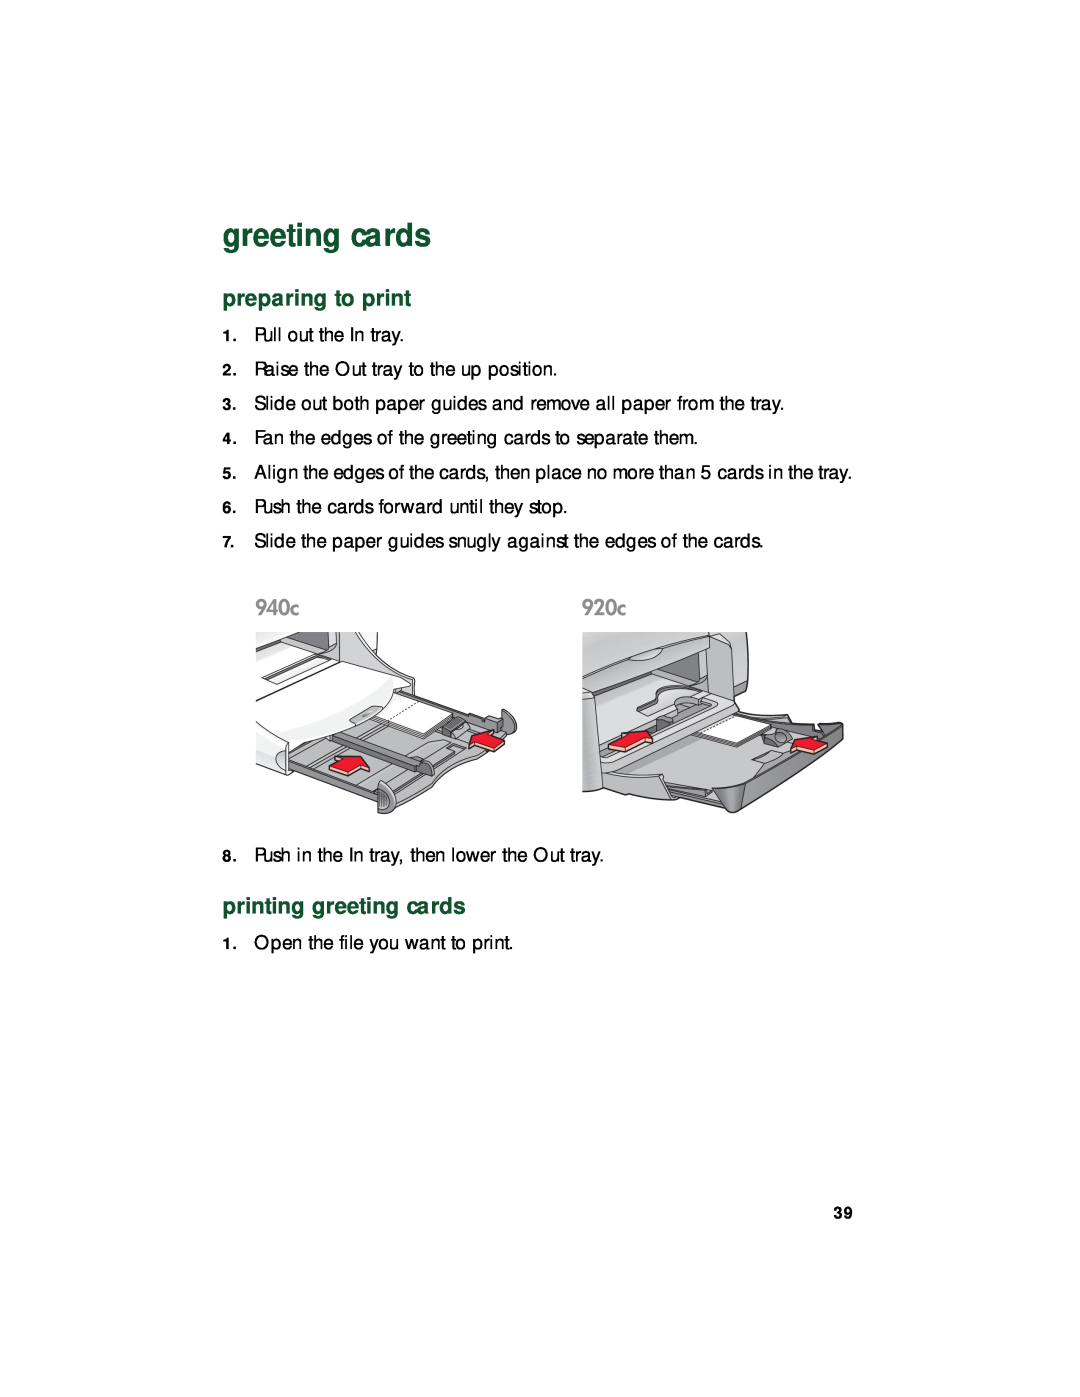 HP 940c, 920c, 948c manual printing greeting cards, preparing to print 